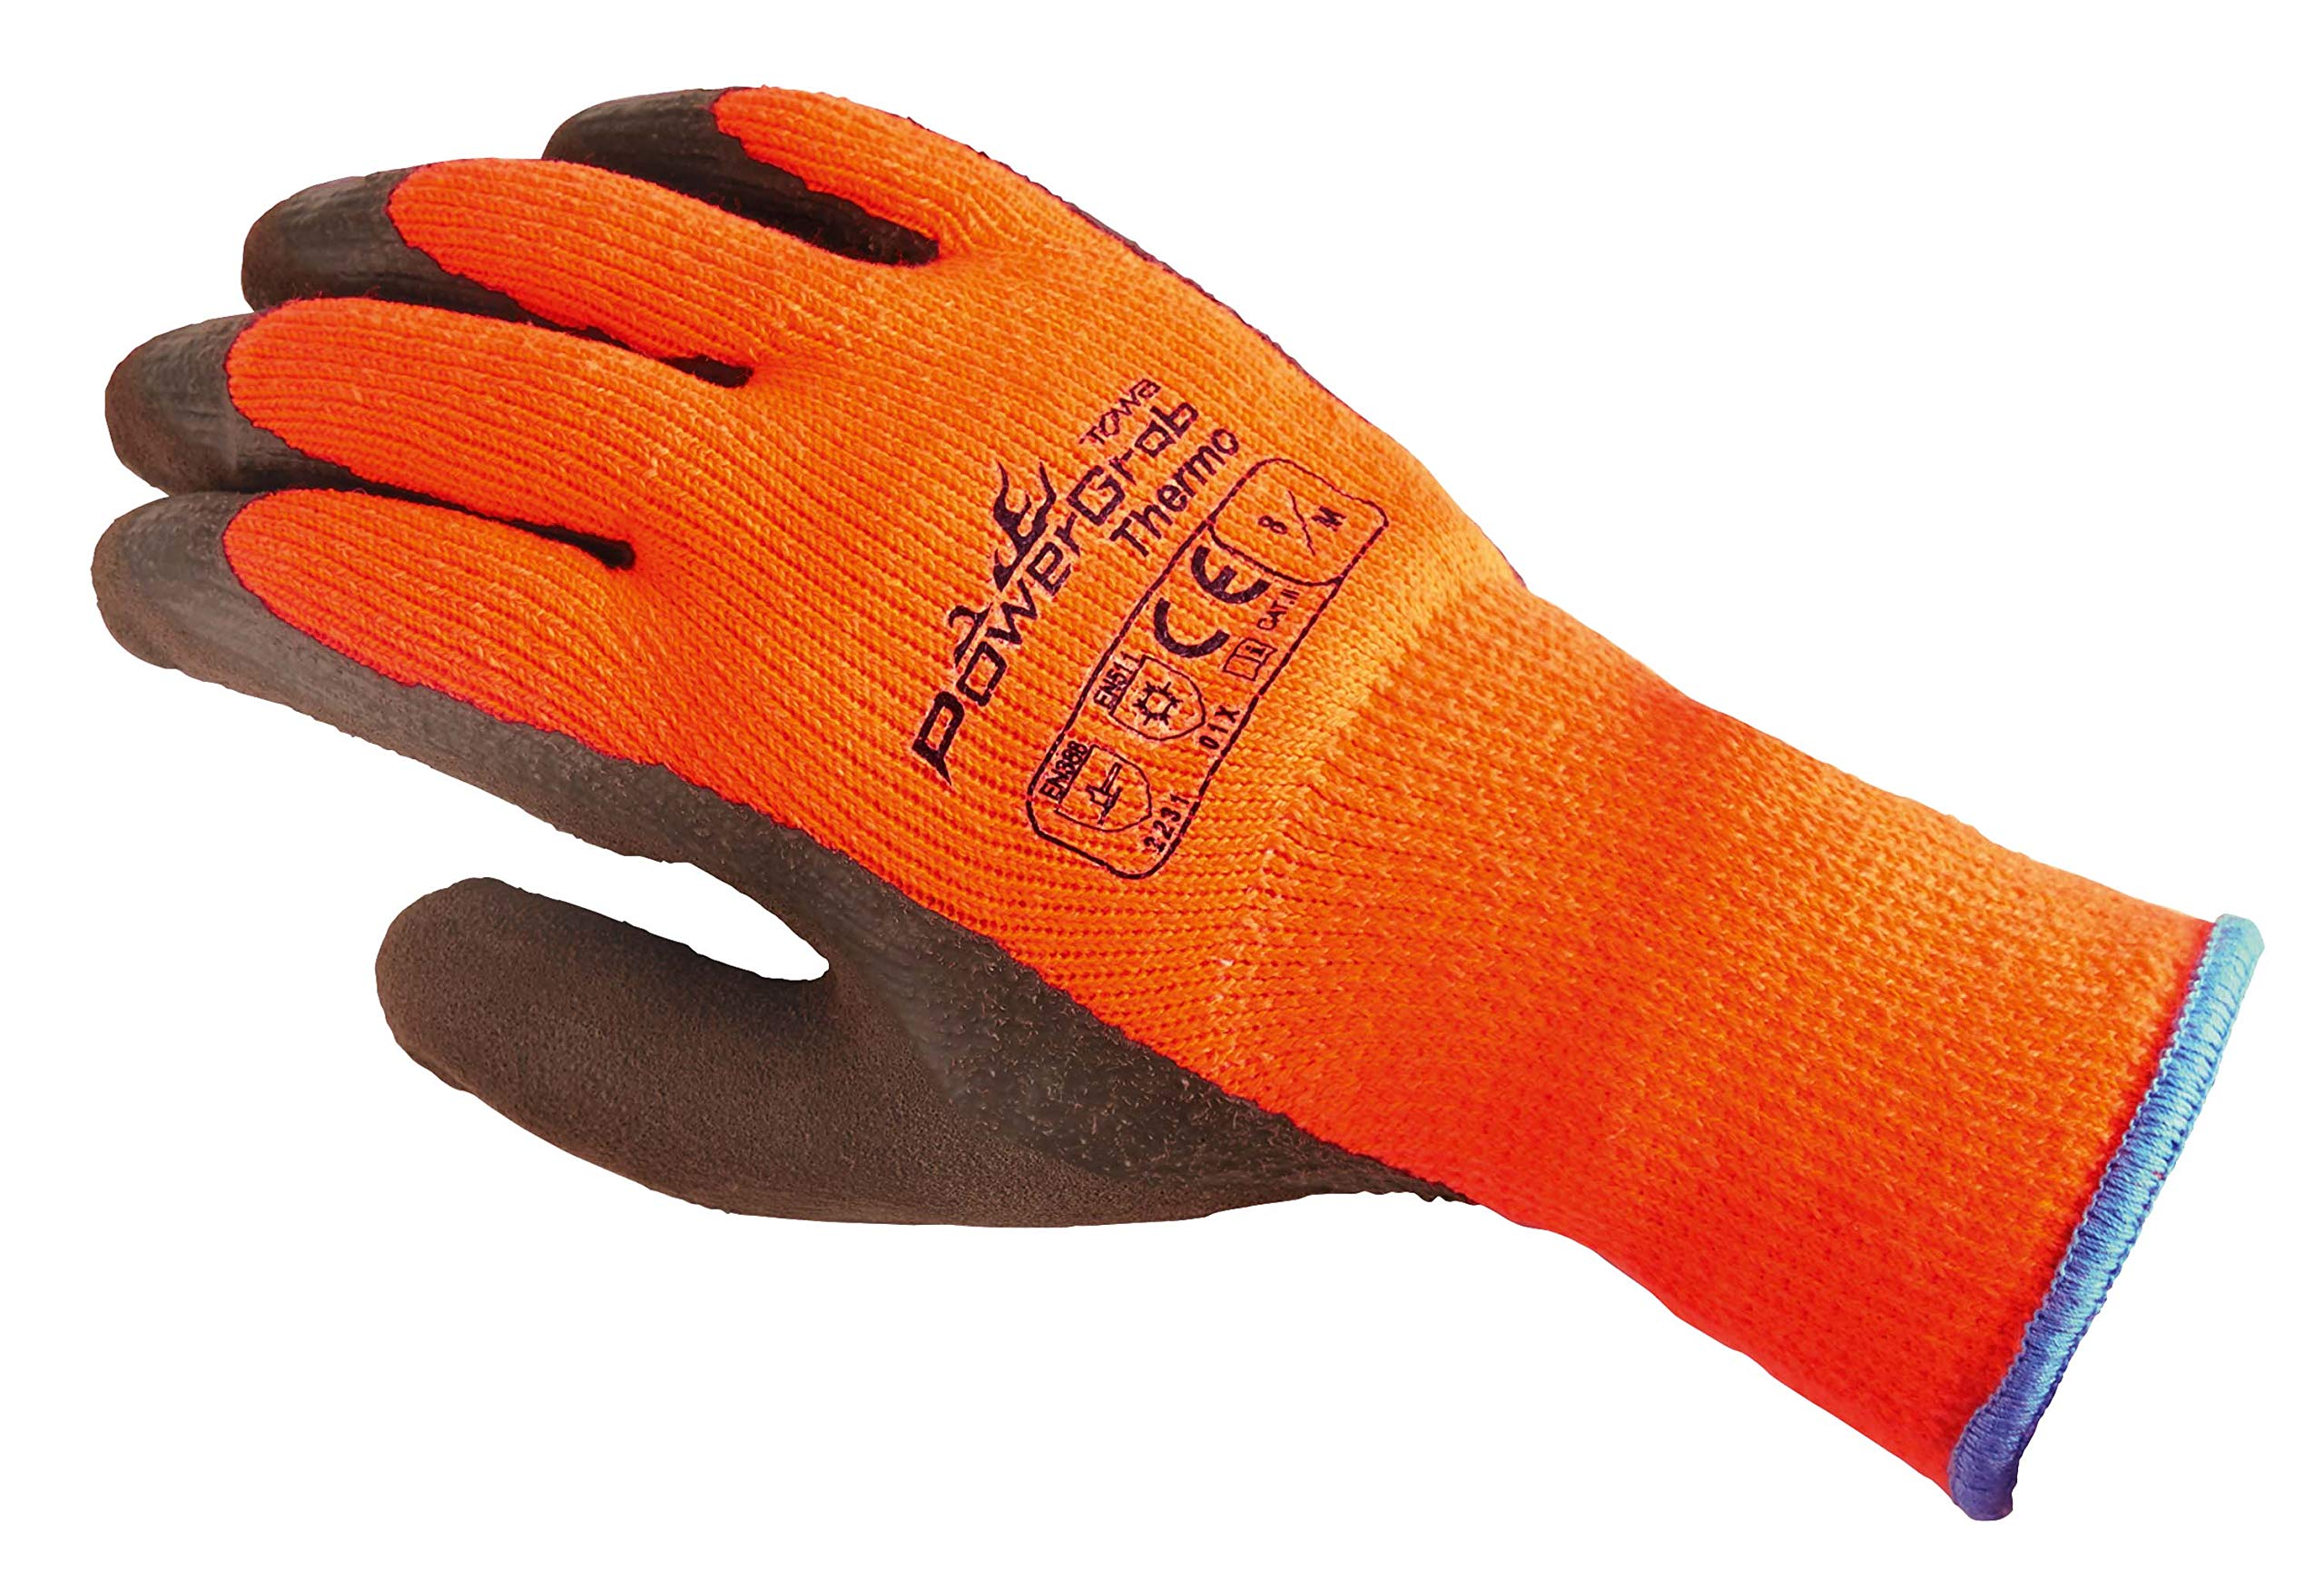 TOWA (6 Paar) Handschuhe Winterhandschuhe PowerGrab Thermo 6 x orange/braun 11